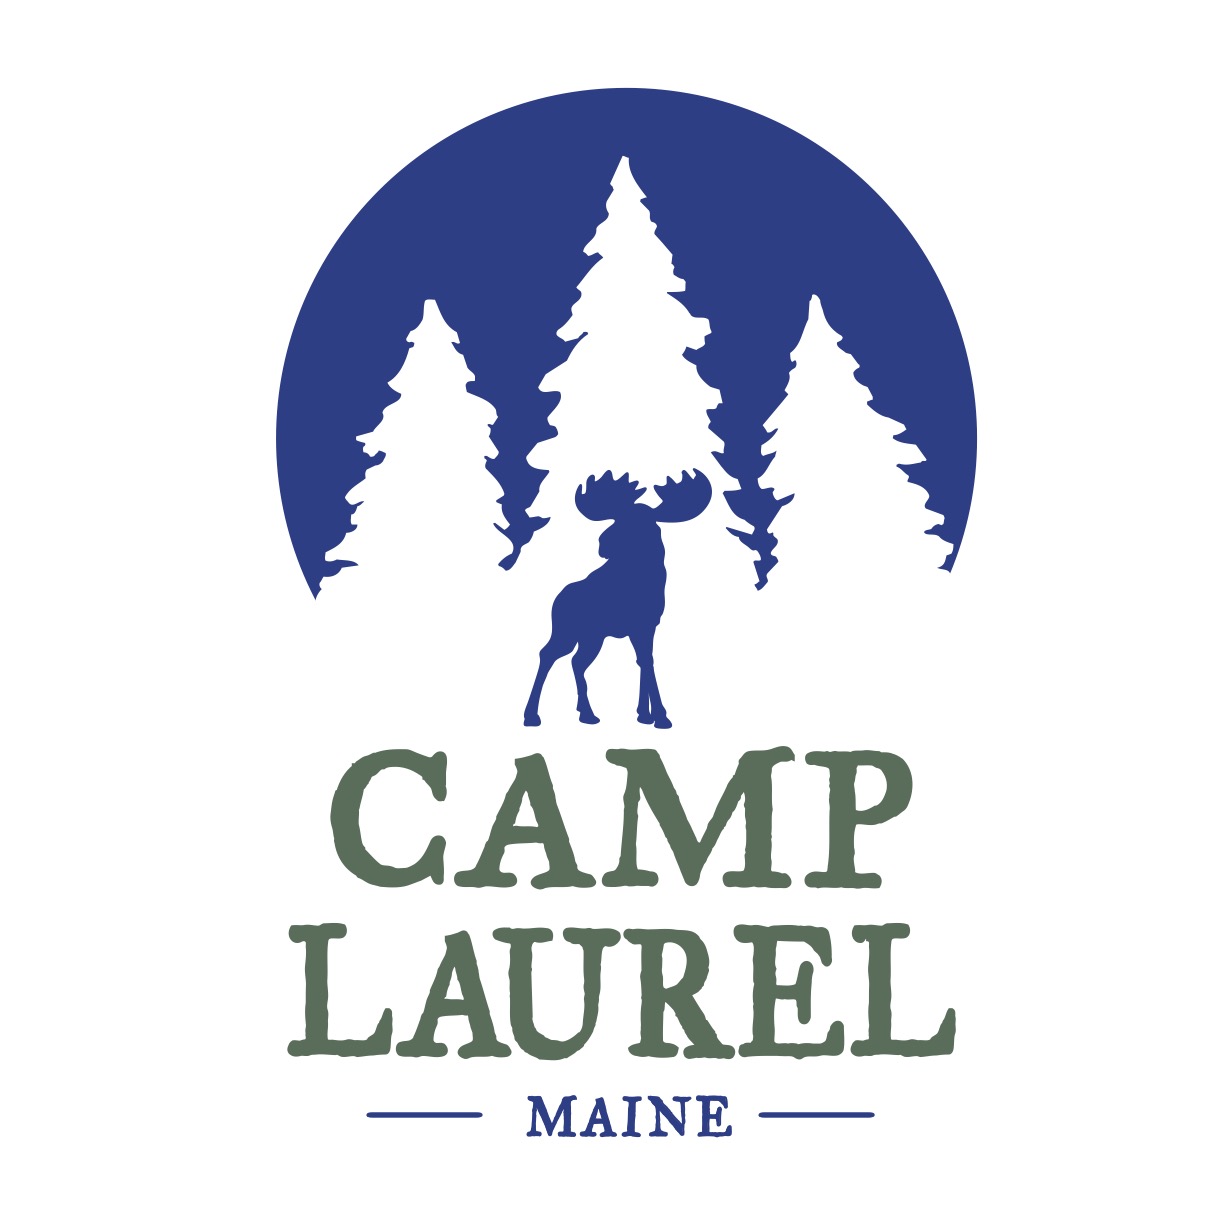 Camp Laurel